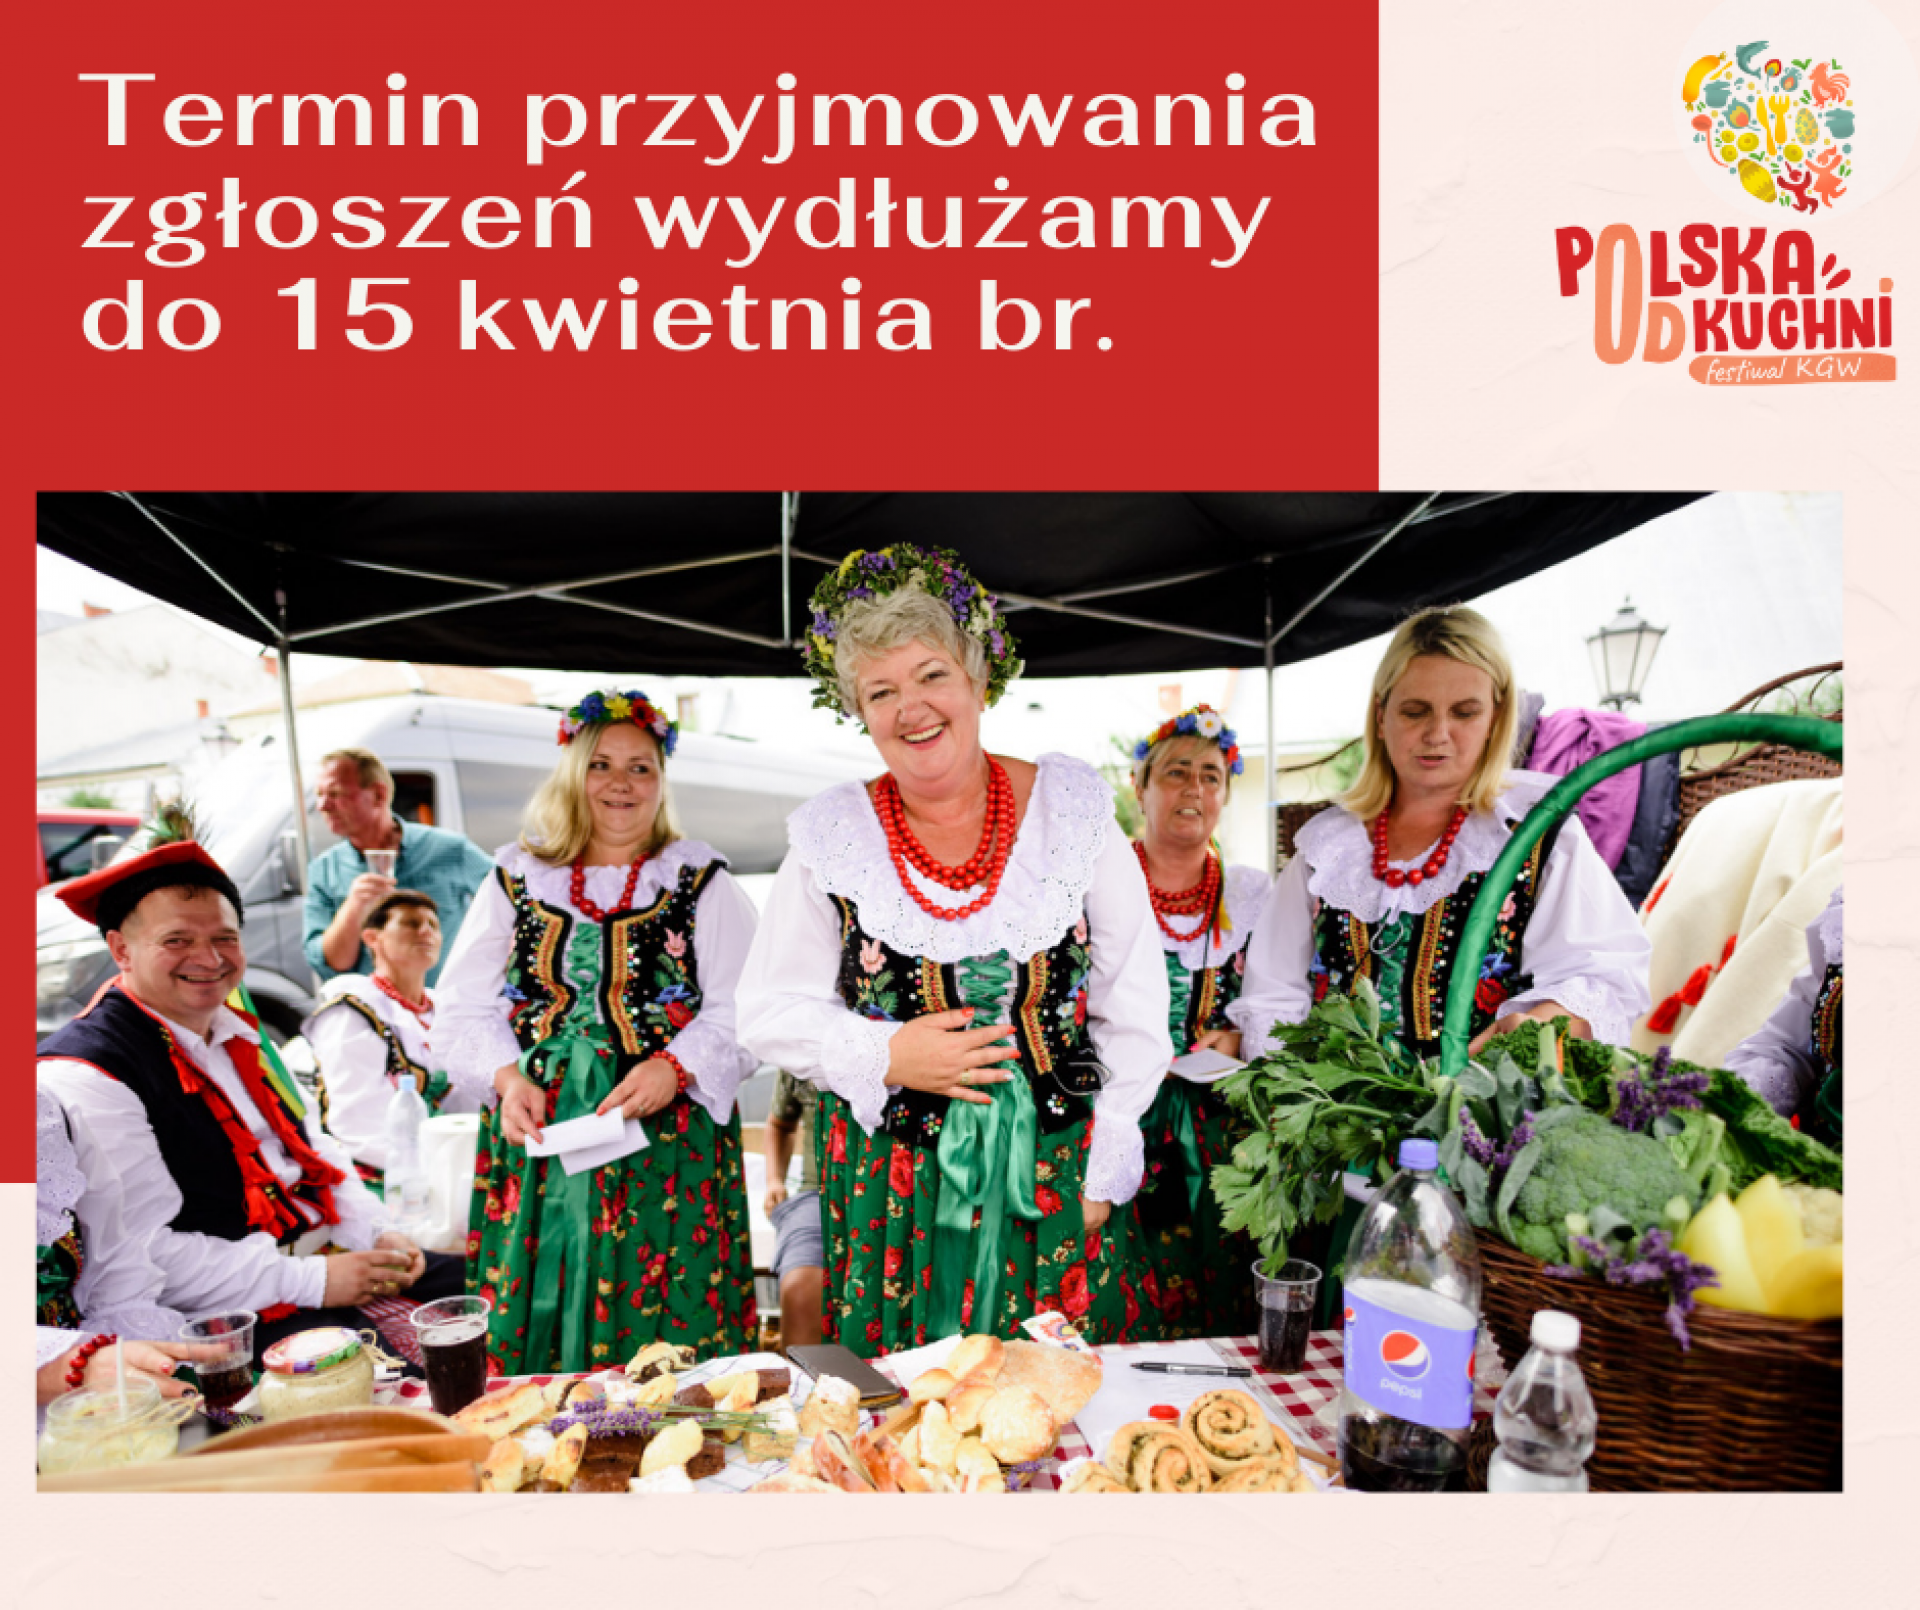 Festiwal Polska od Kuchni - do 15 kwietnia trwają zapisy!